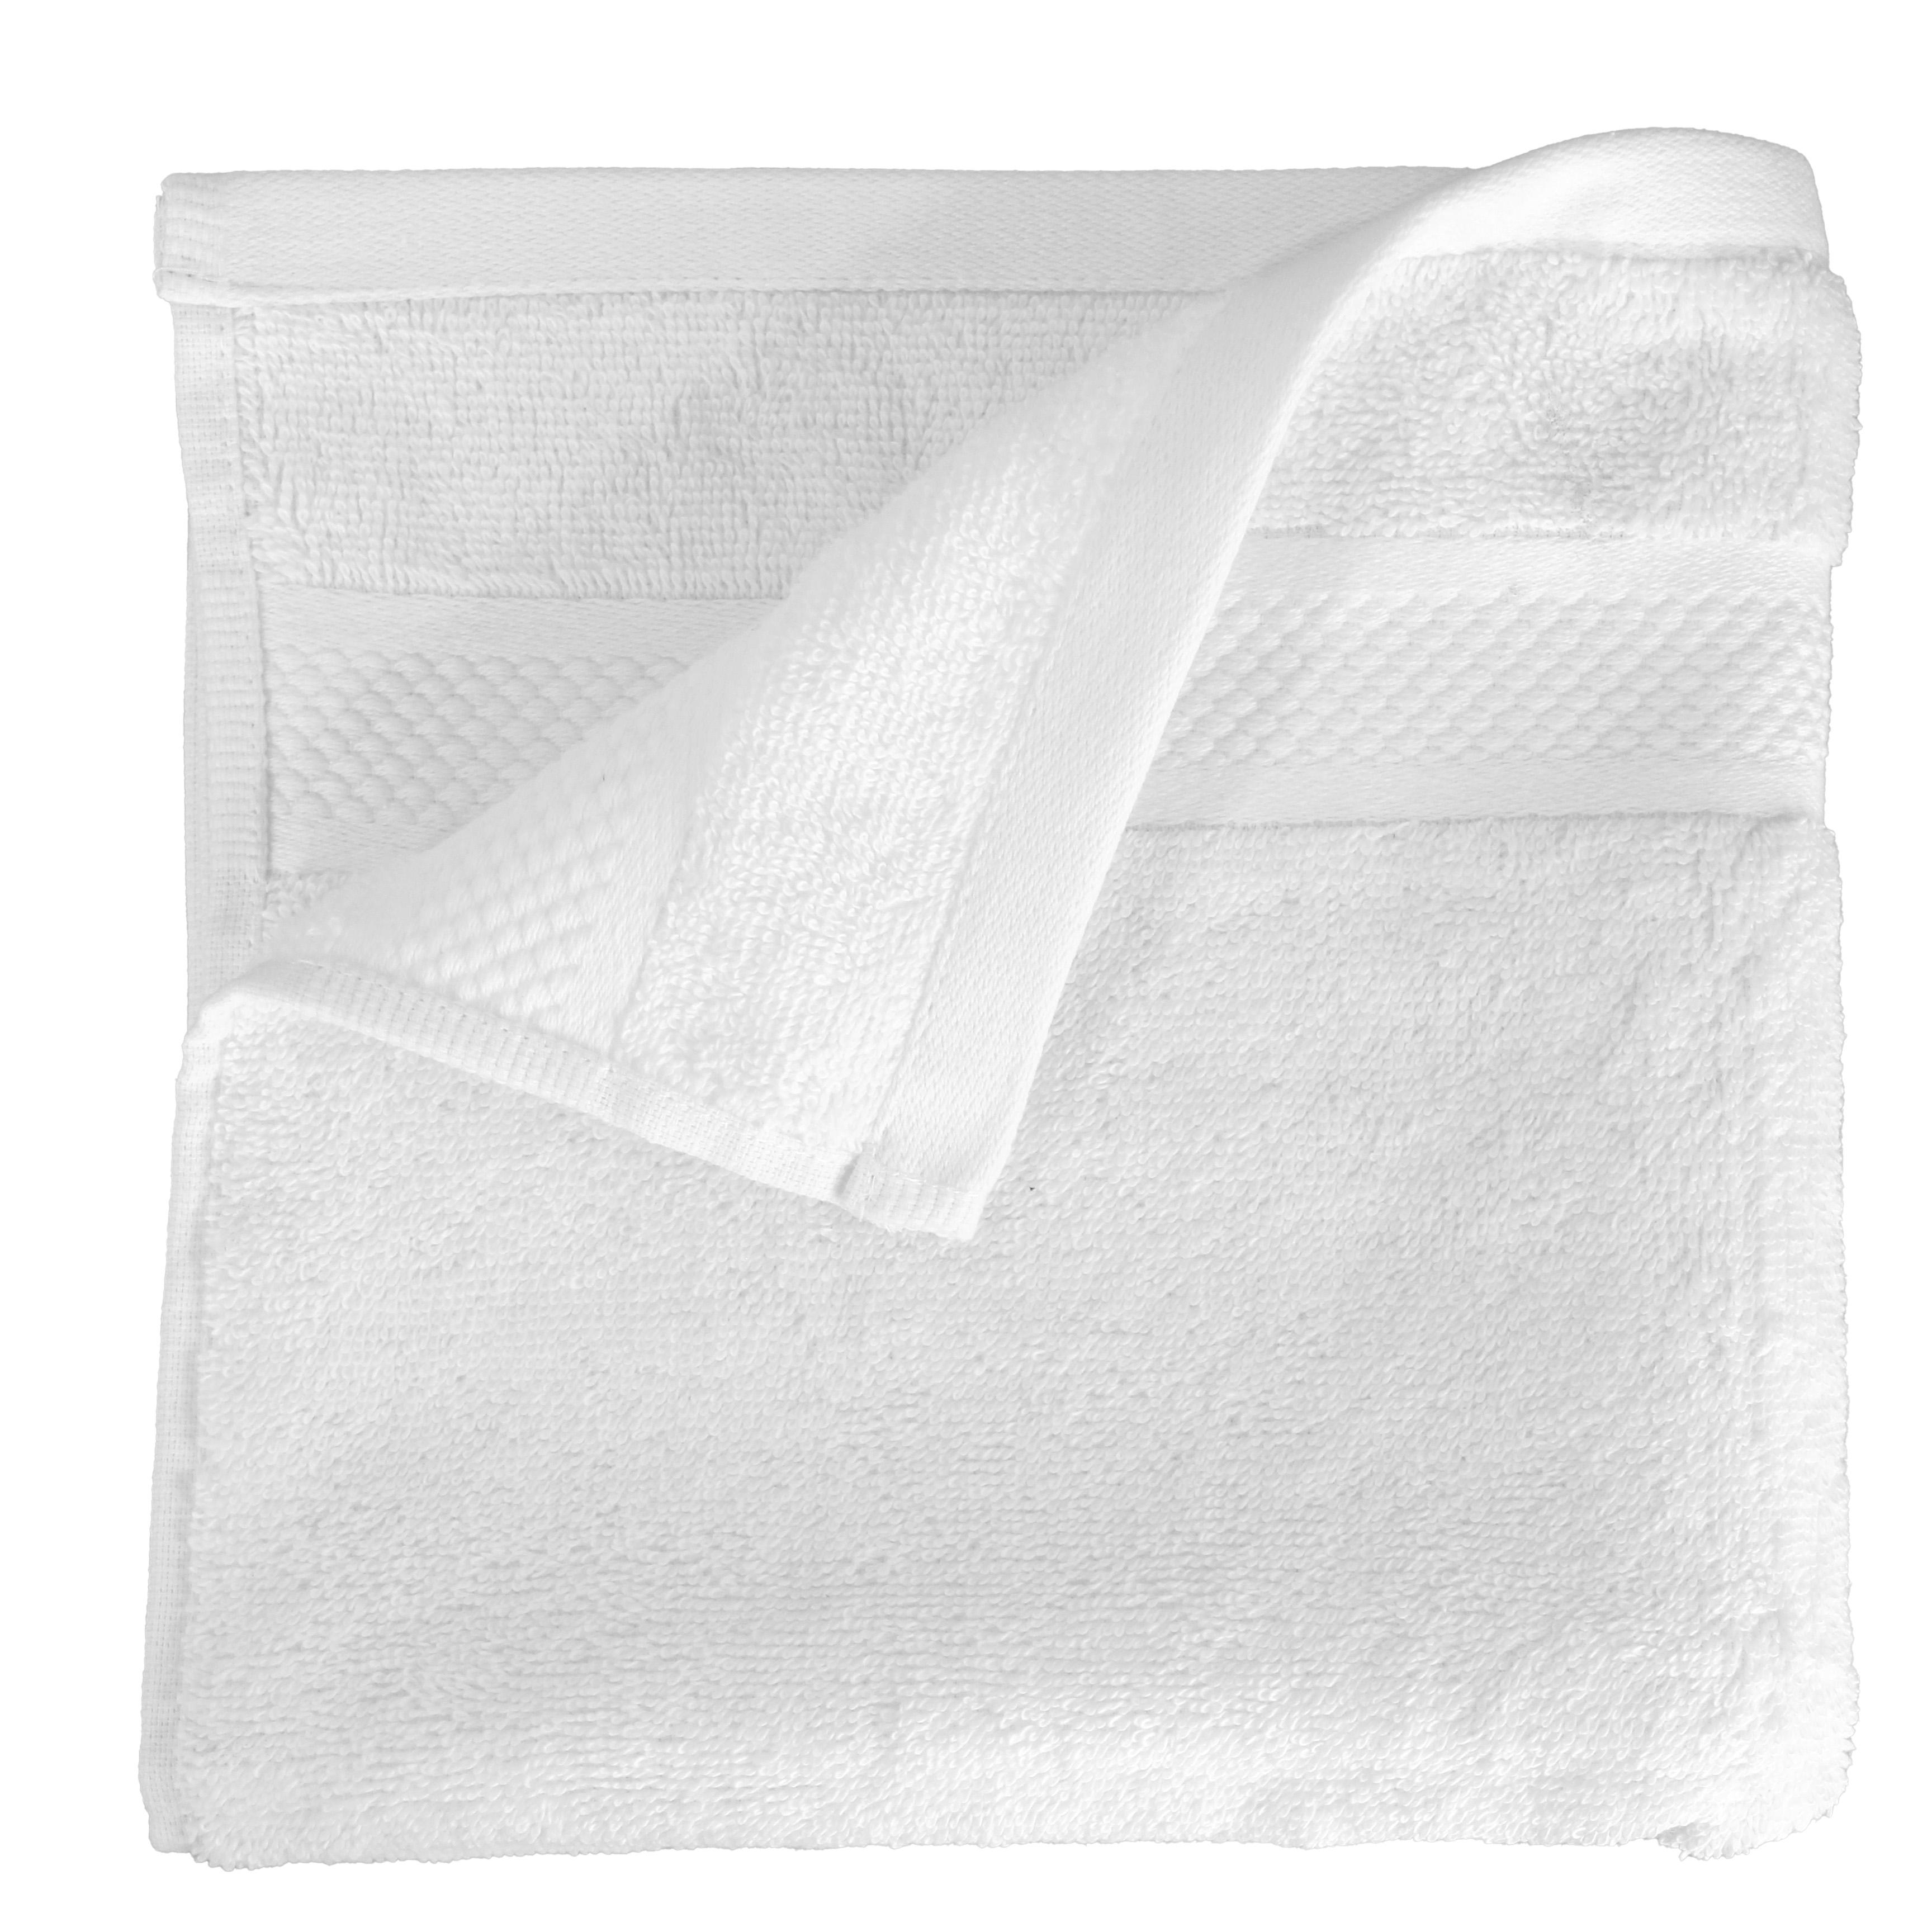 6 handdoeken van hotelkwaliteit